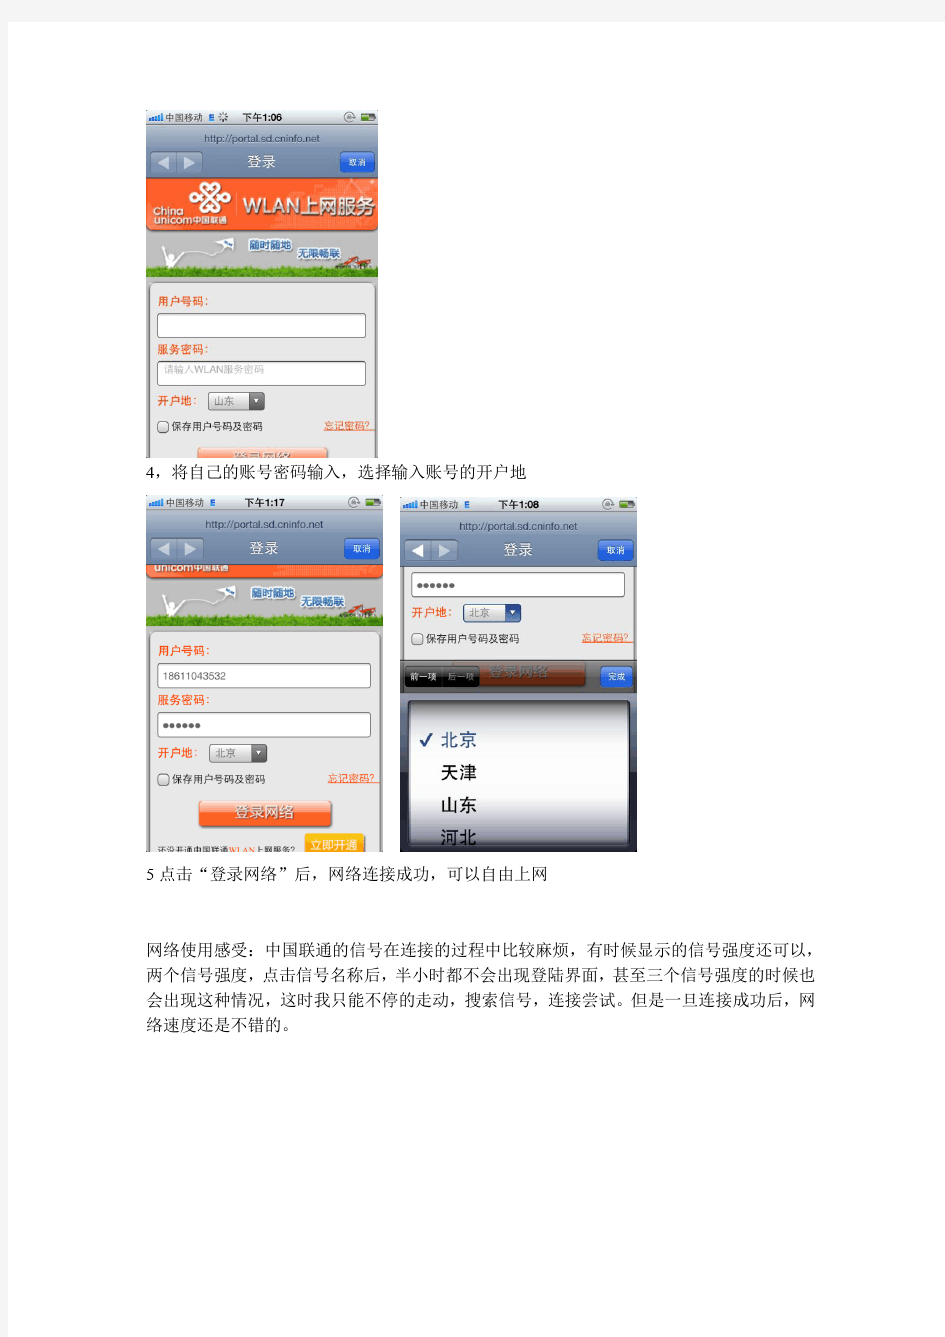 中国联通(ChinaUicom)WiFi上网教程